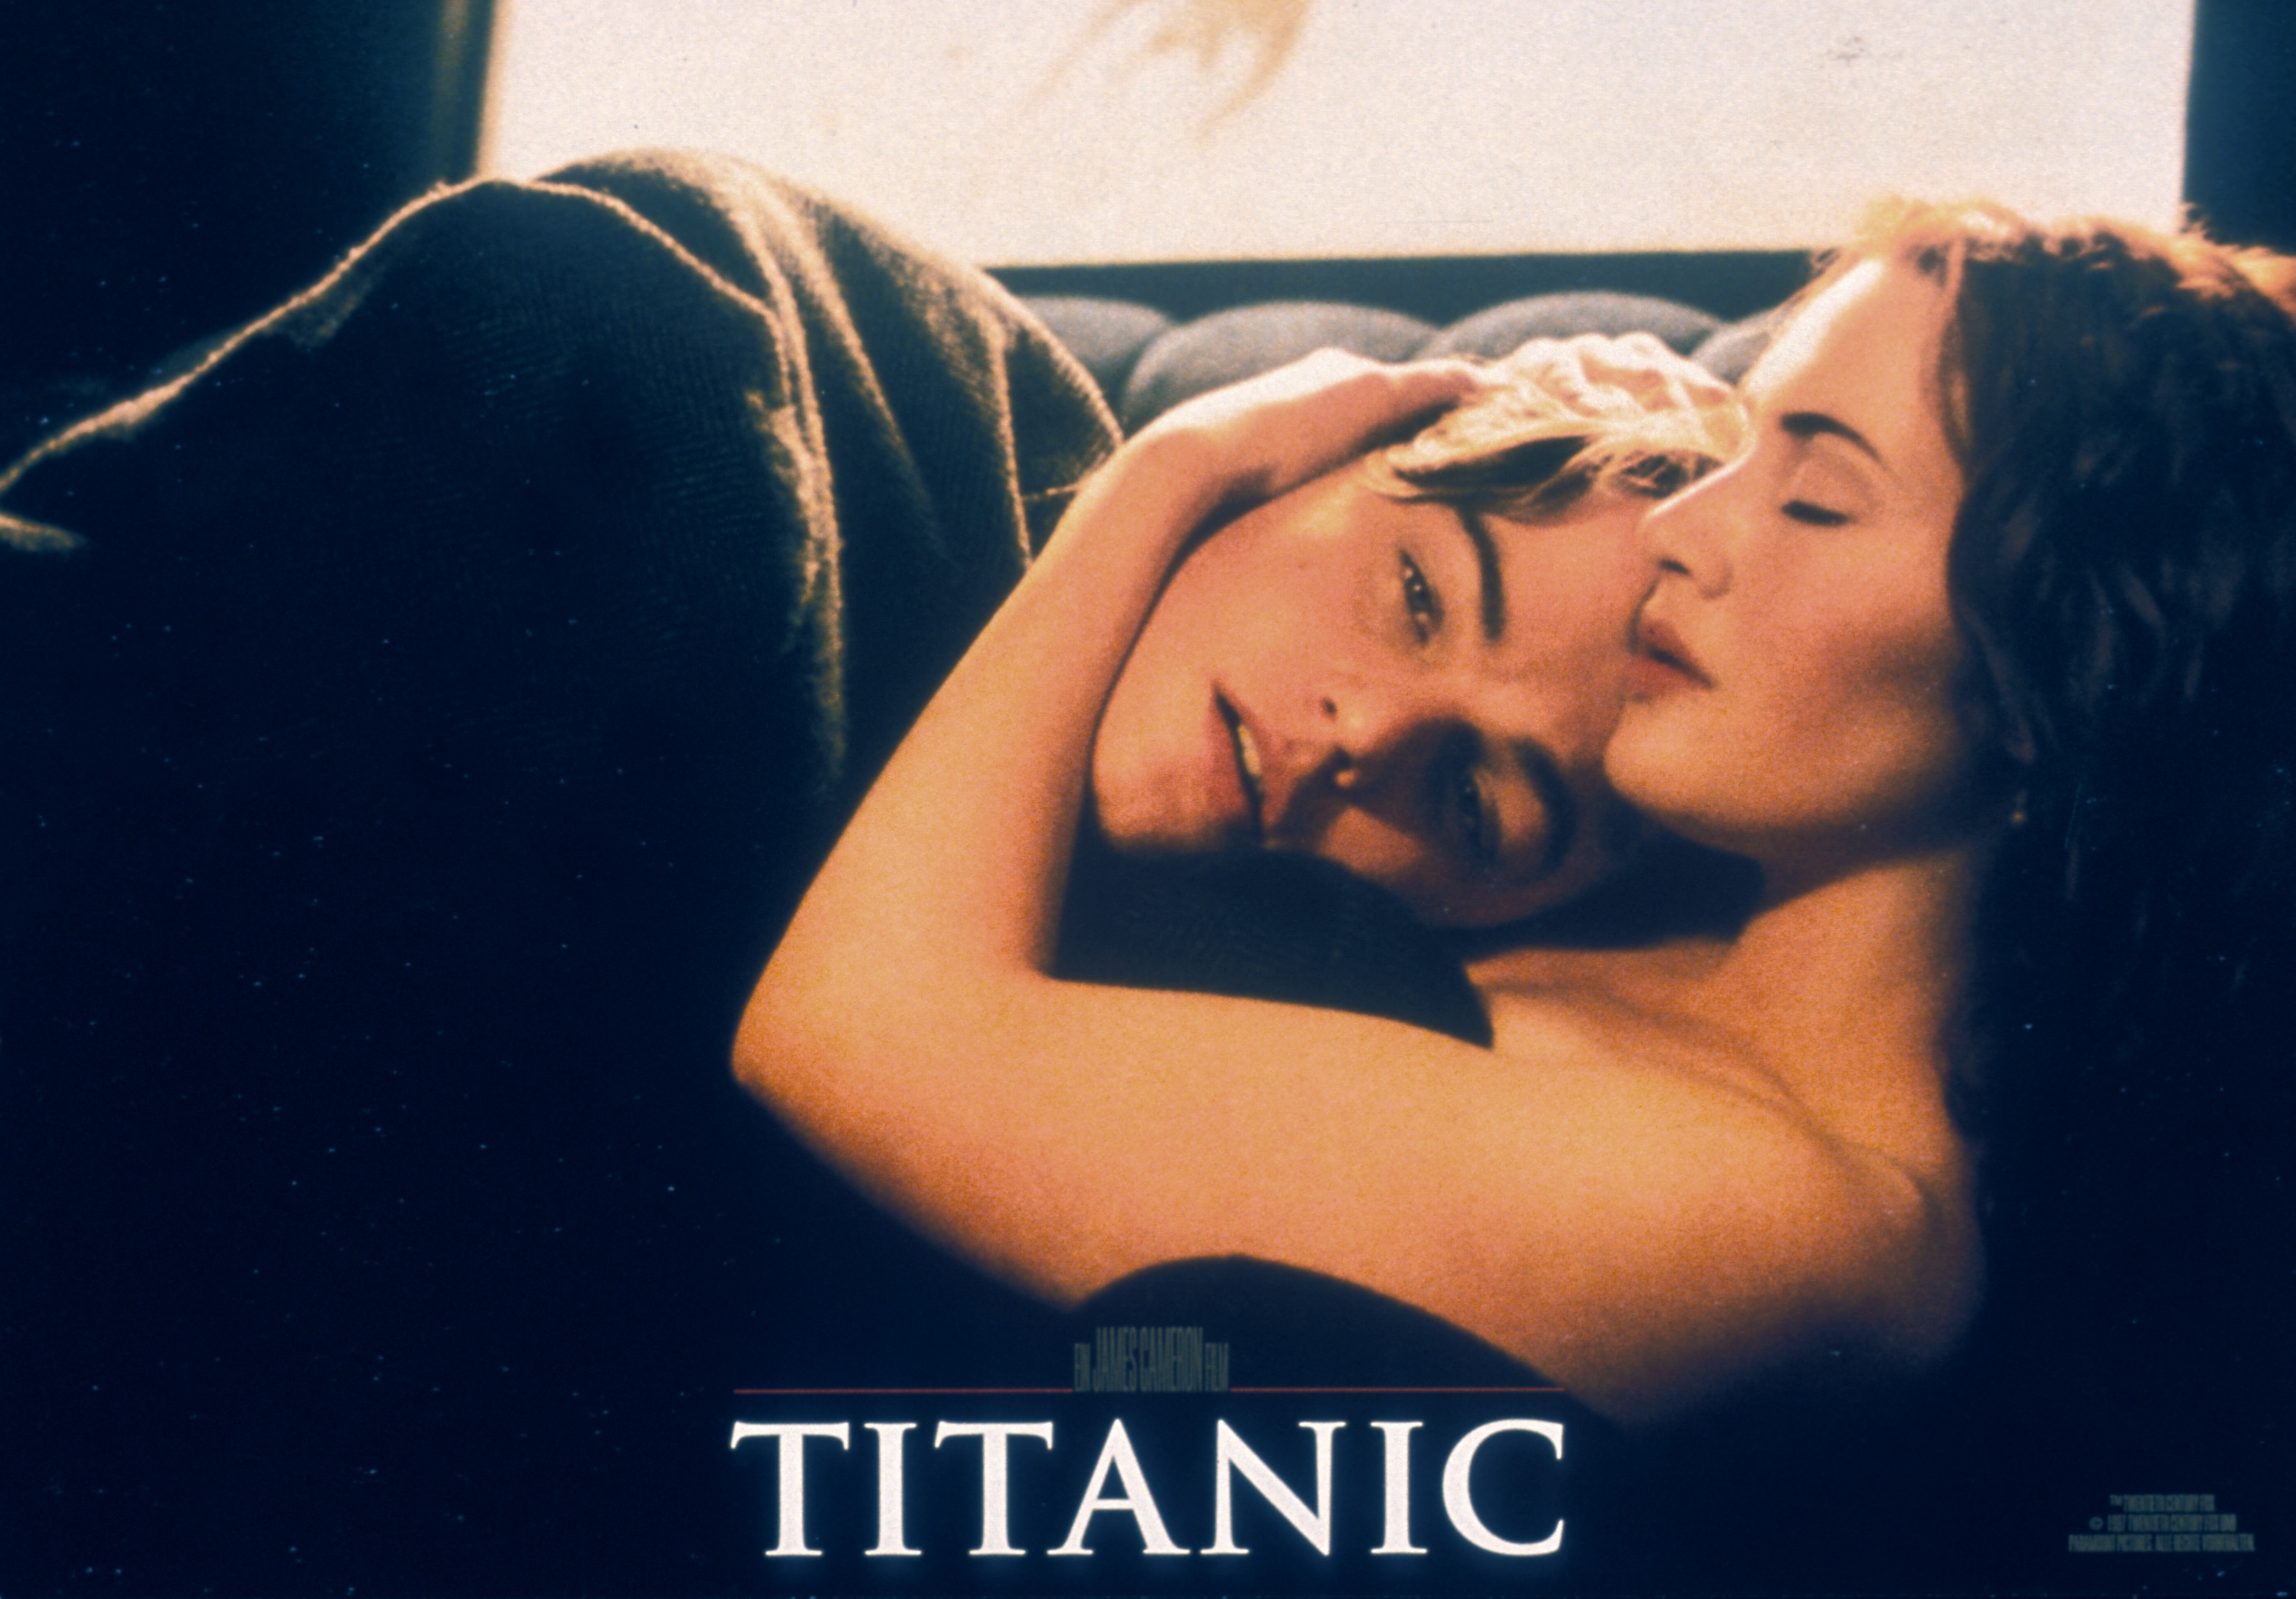 1997 il fenomeno Titanic. Qui con la protagonista femminile Kate Winslet